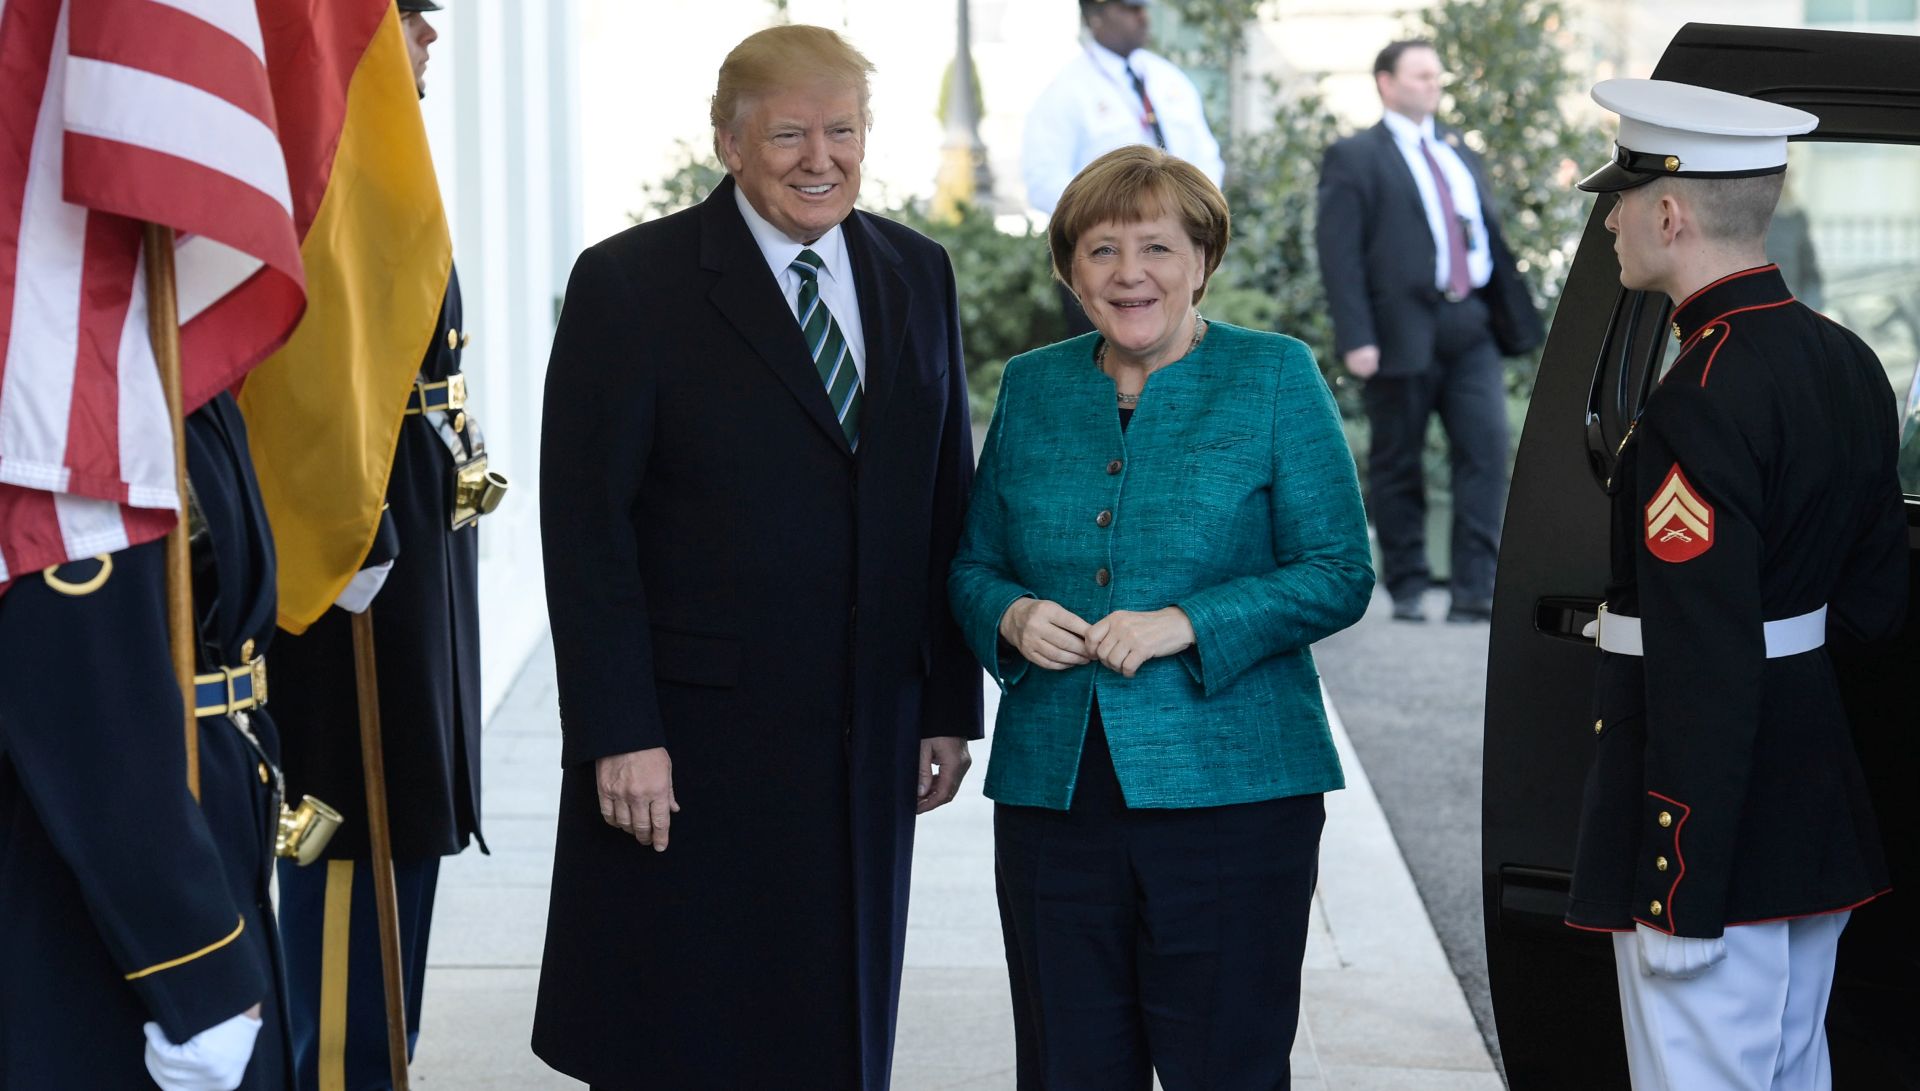 NAKON 4 DANA Trump čestitao Merkel na izbornoj pobjedi